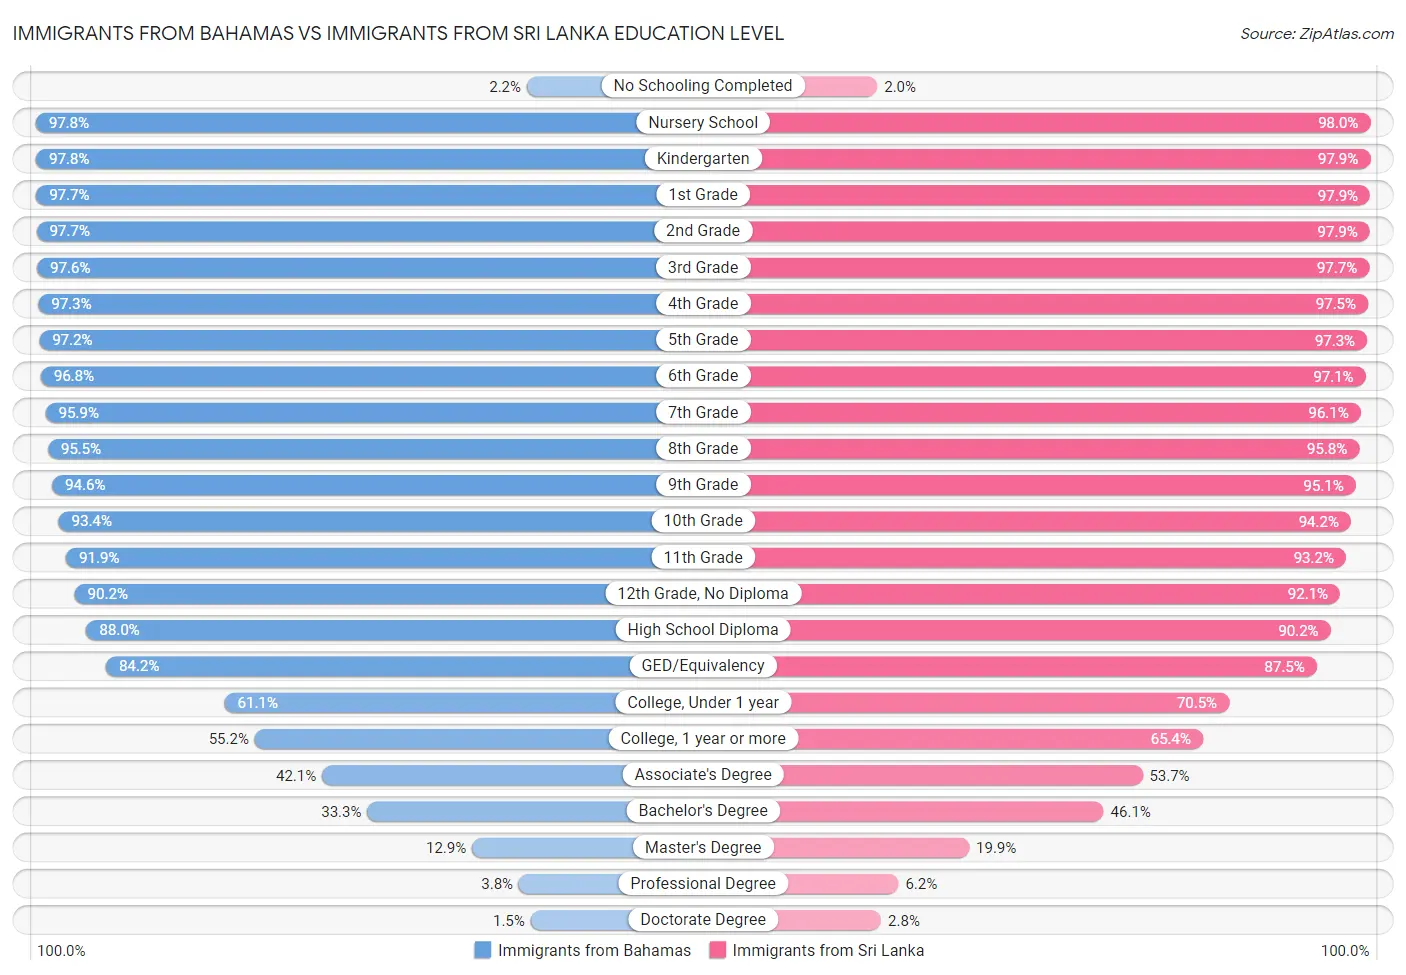 Immigrants from Bahamas vs Immigrants from Sri Lanka Education Level